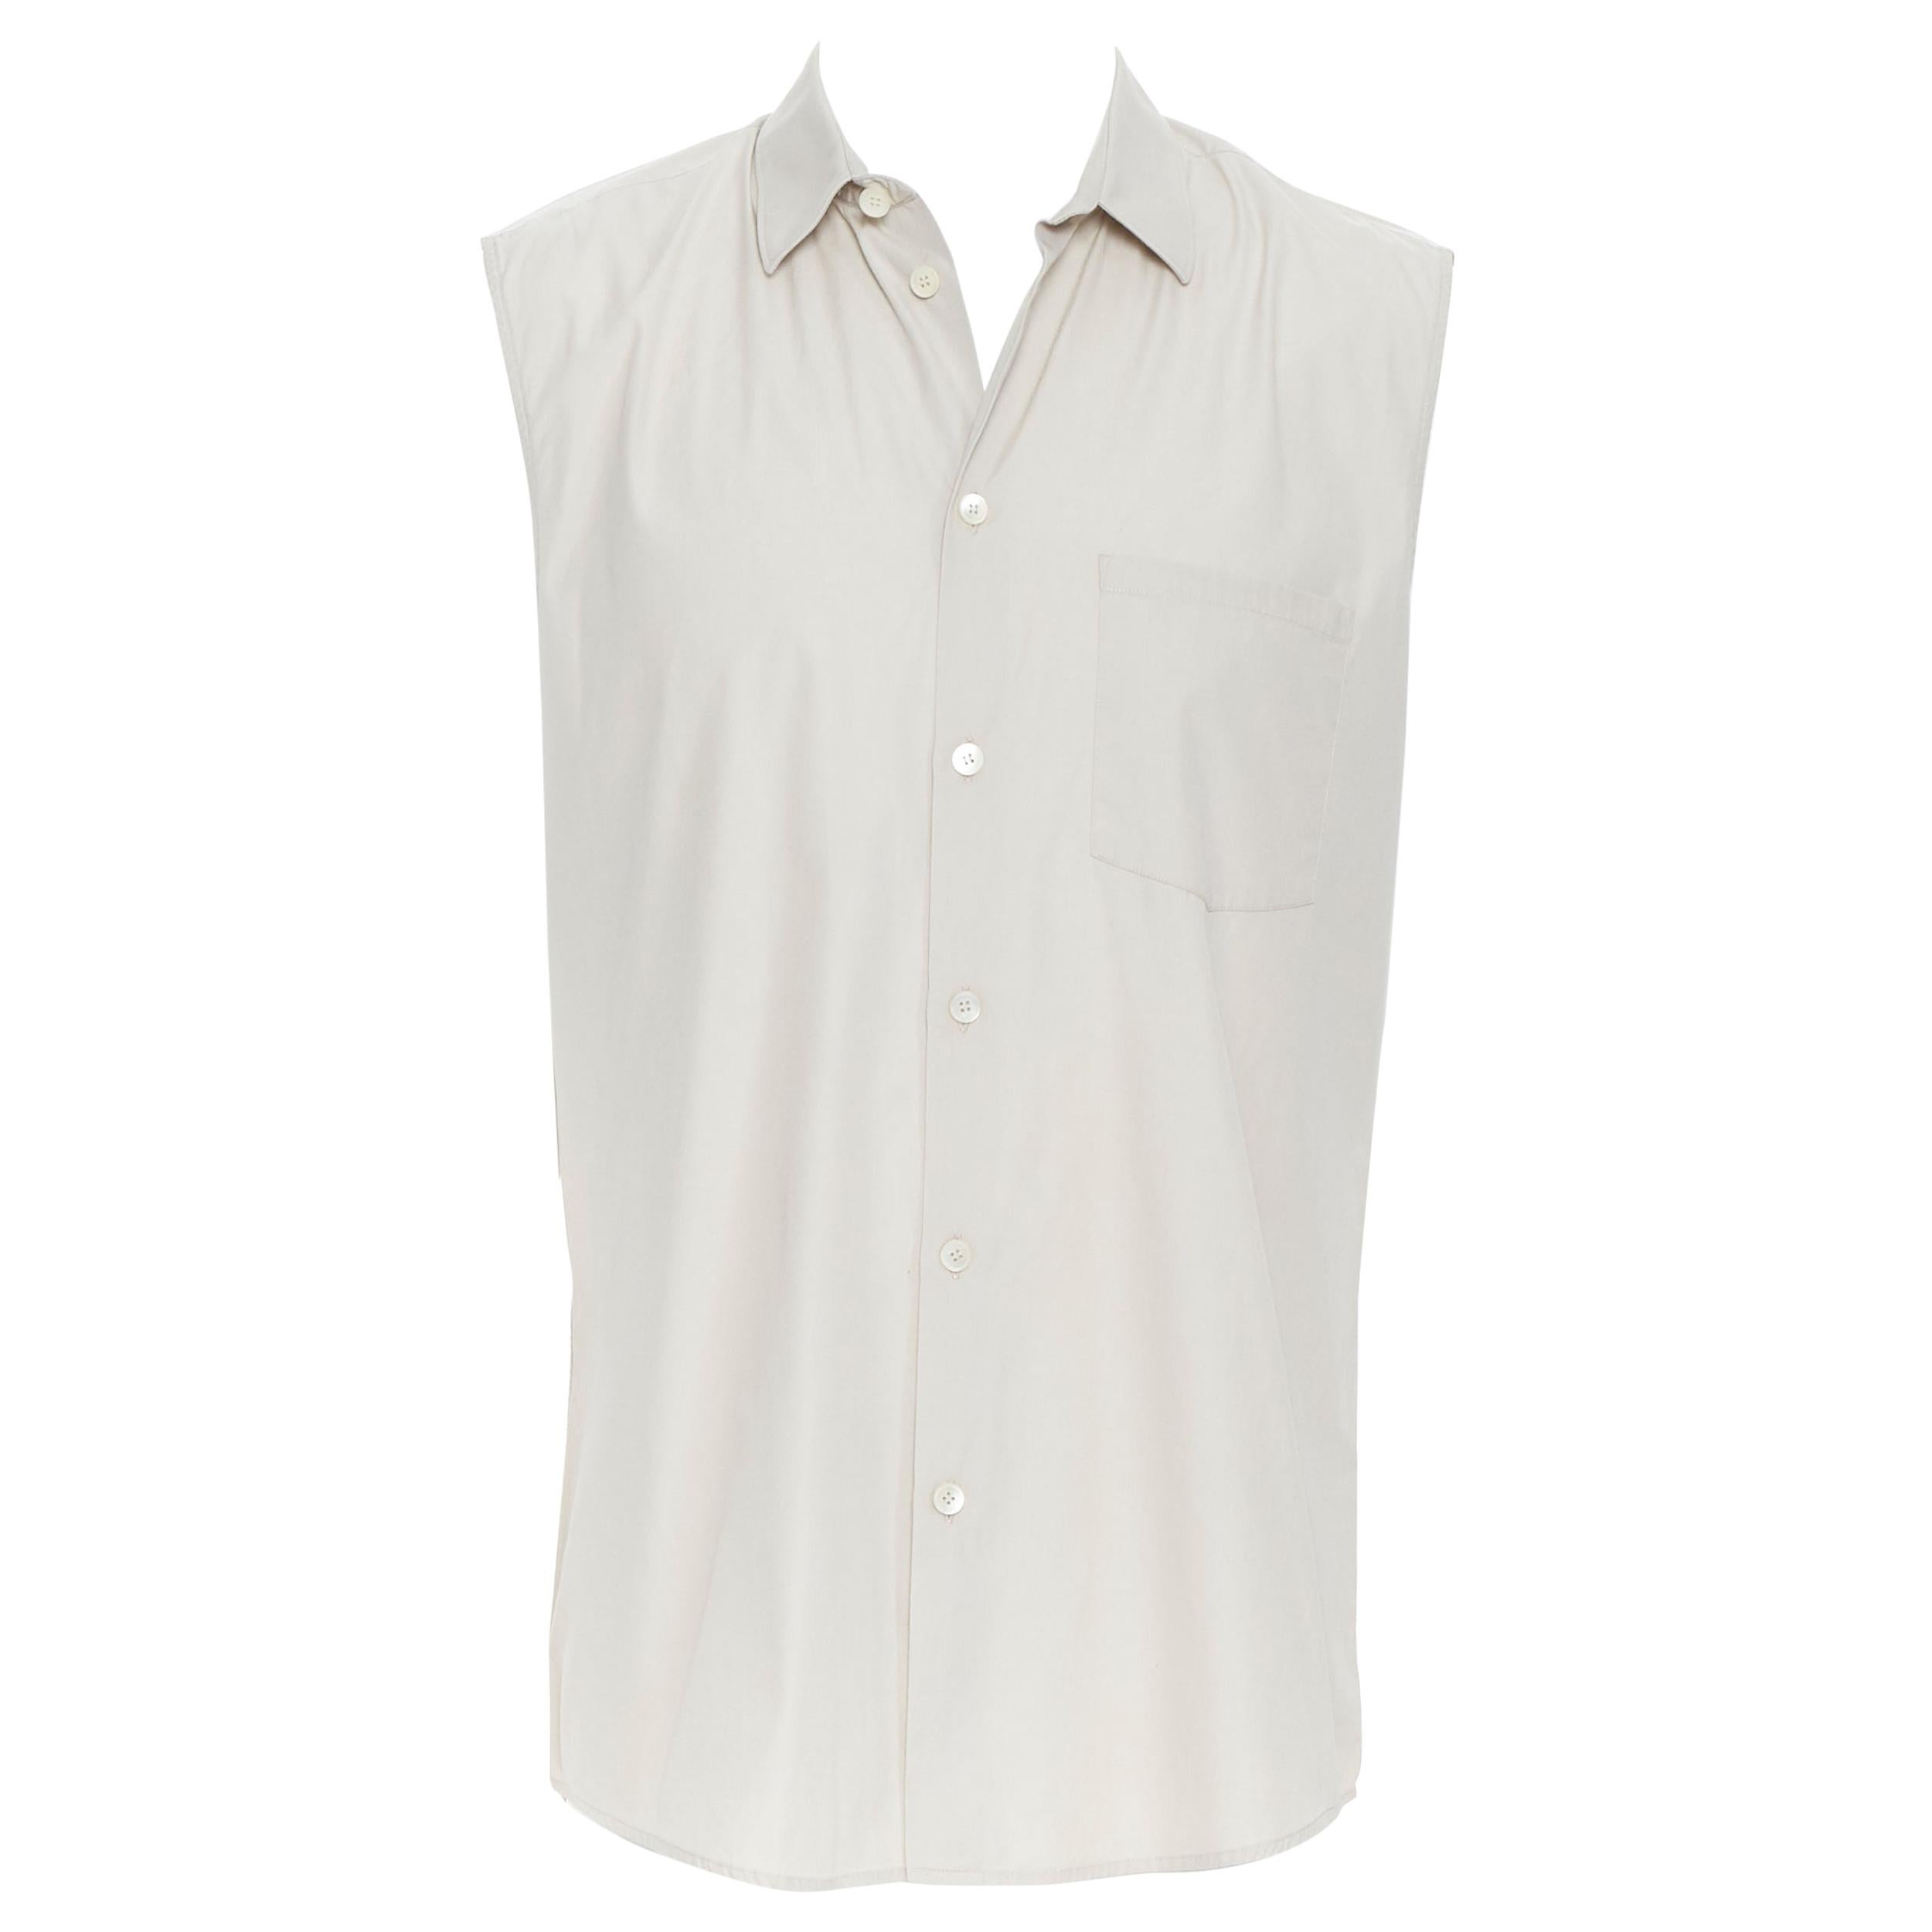 HELMUT LANG light beige cotton sleevless spread collar button front vest shirt